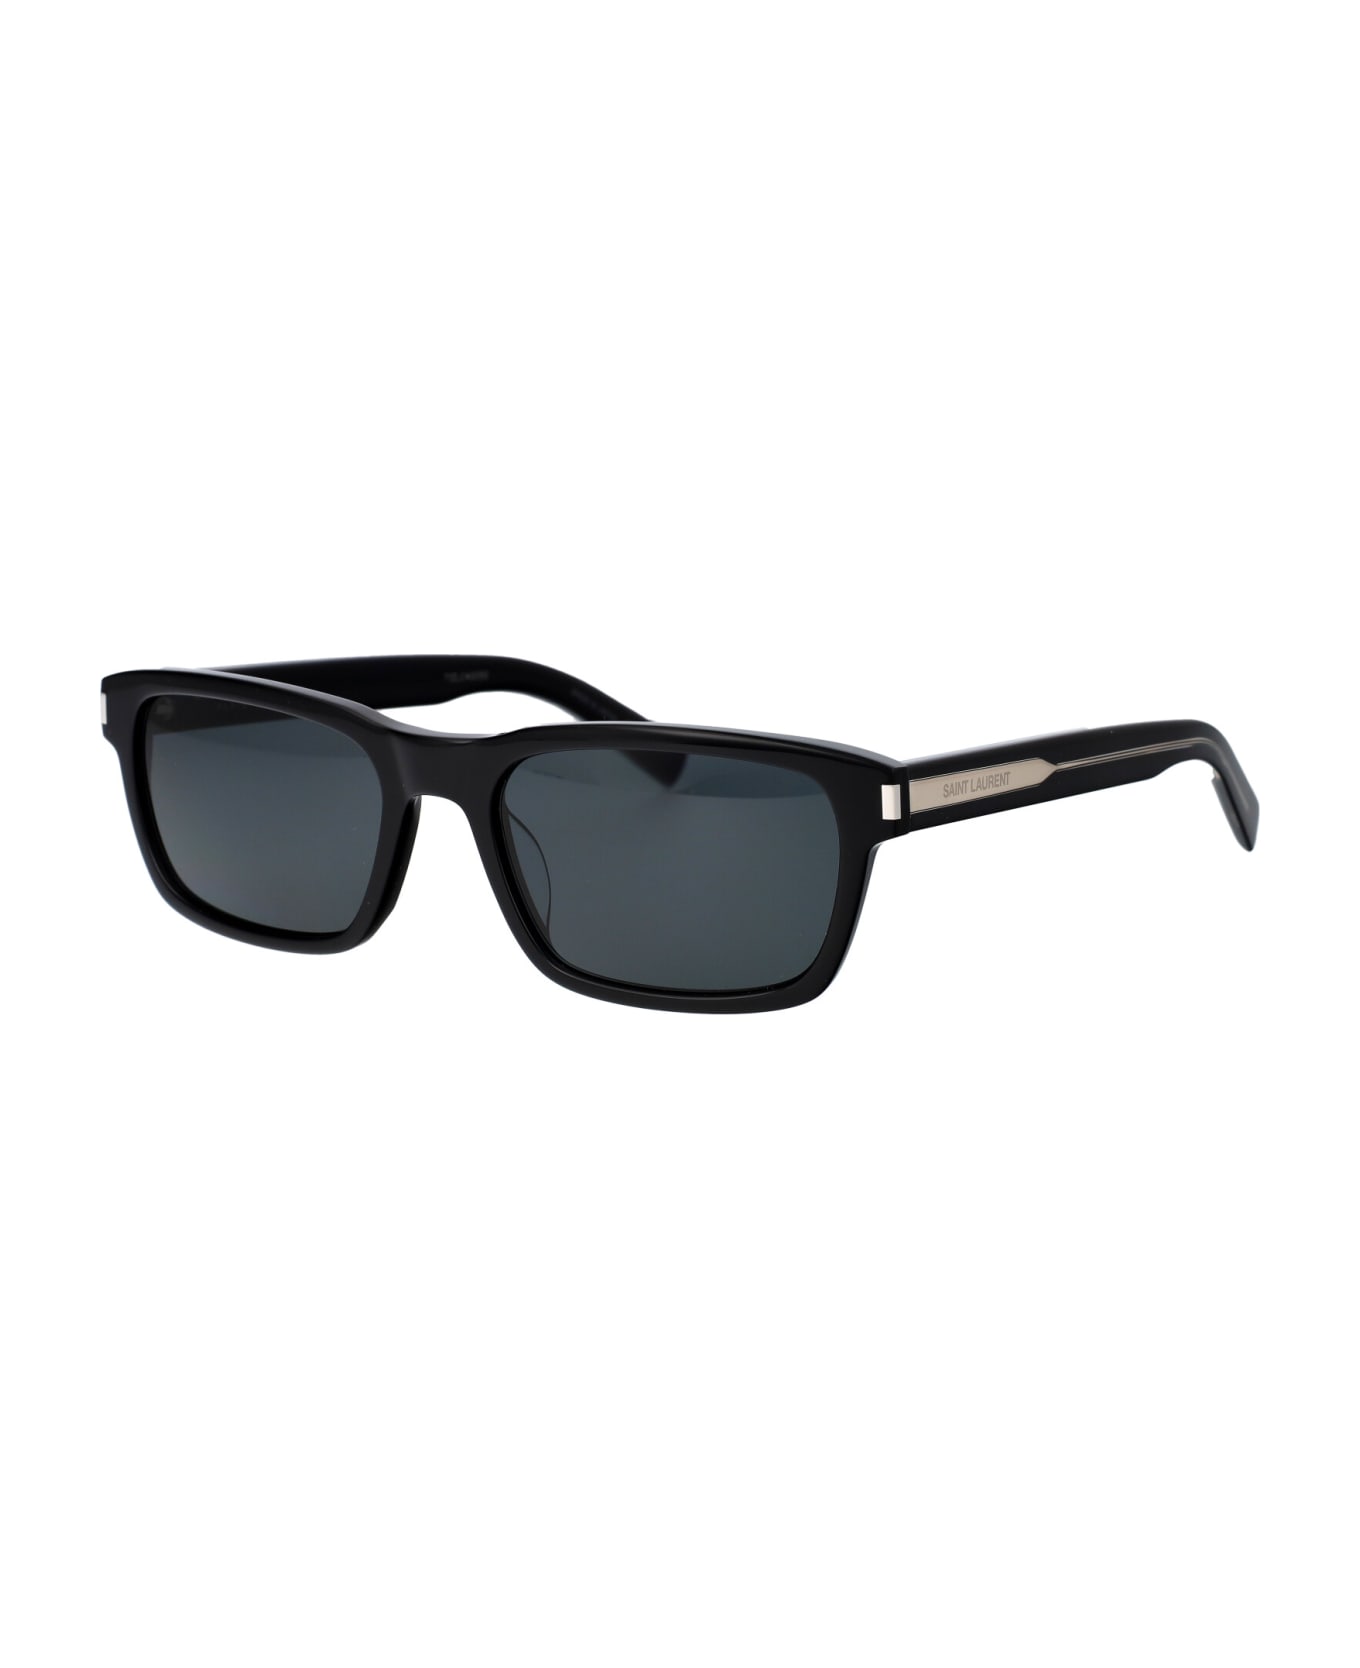 Saint Laurent Eyewear Sl 662 Sunglasses - 001 BLACK CRYSTAL BLACK